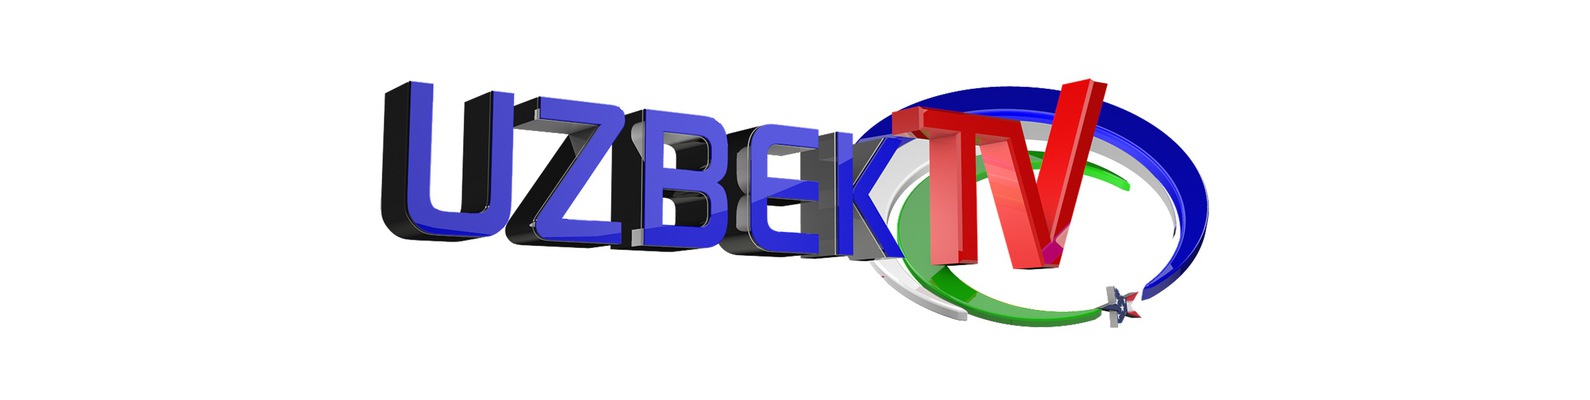 Узбекский эфир. Узбекское Телевидение. Узбекистон телеканали. Узбекские Телеканалы. Логотипы телеканалов Узбекистана.